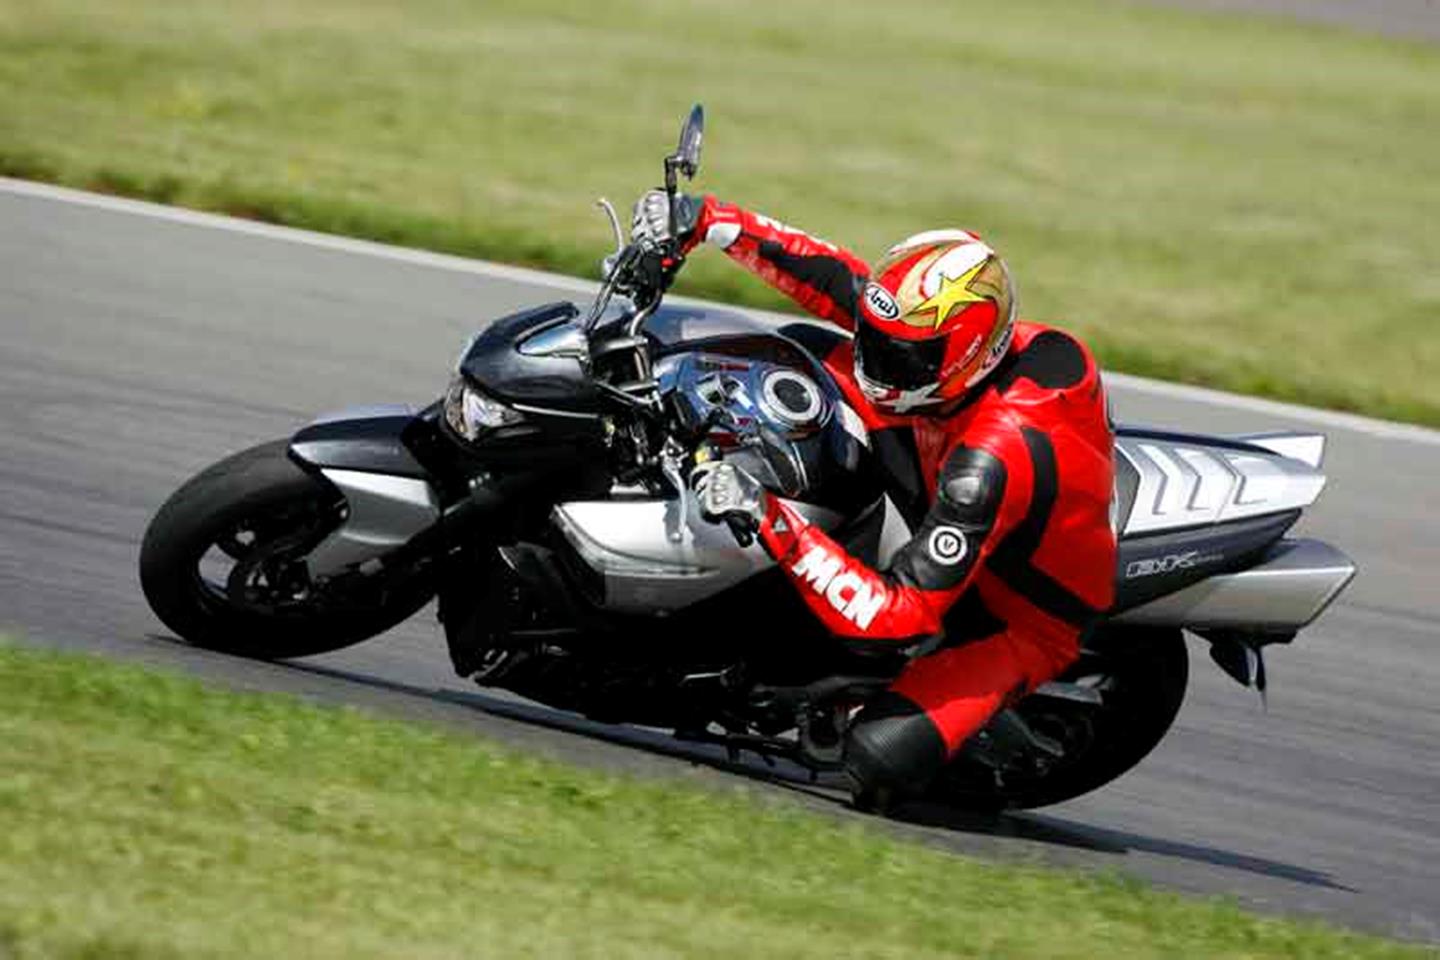 Suzuki B-King ridden with knee down